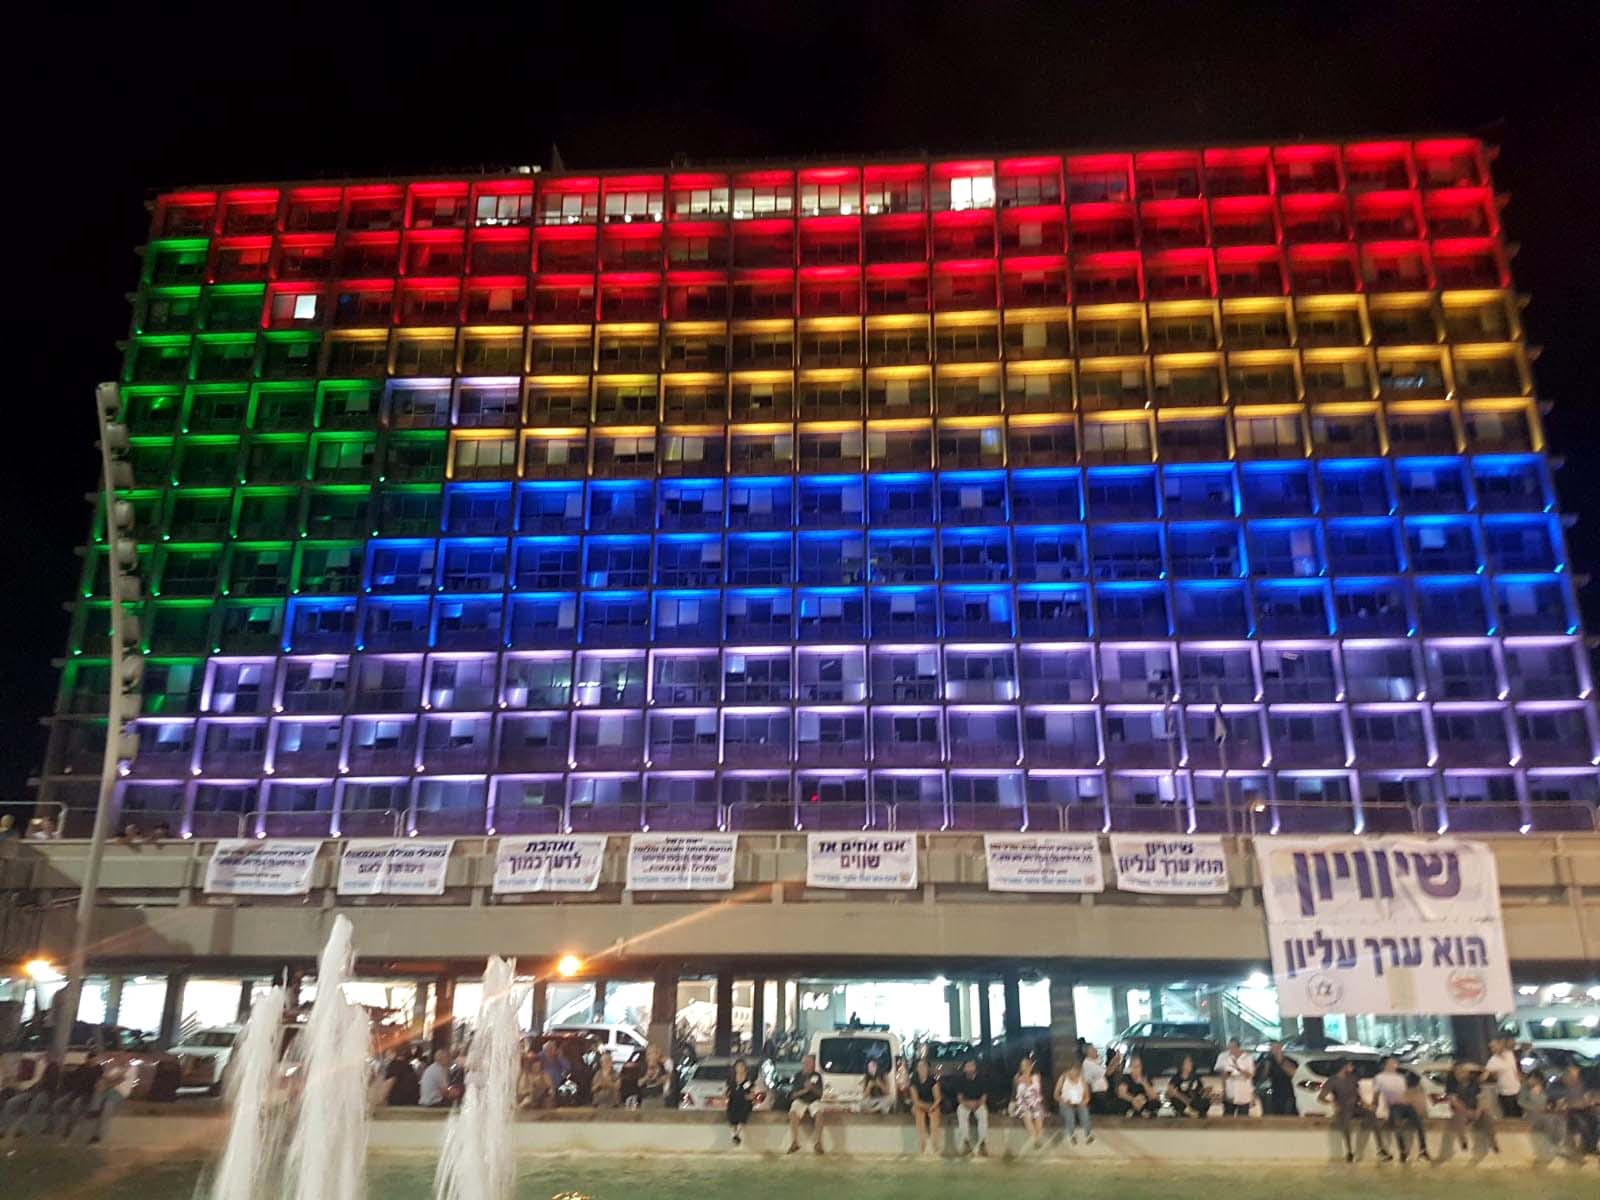 בניין עריית תל אביב מואר בצבעי הדגל הדרוזי (צילום: שי ניר).